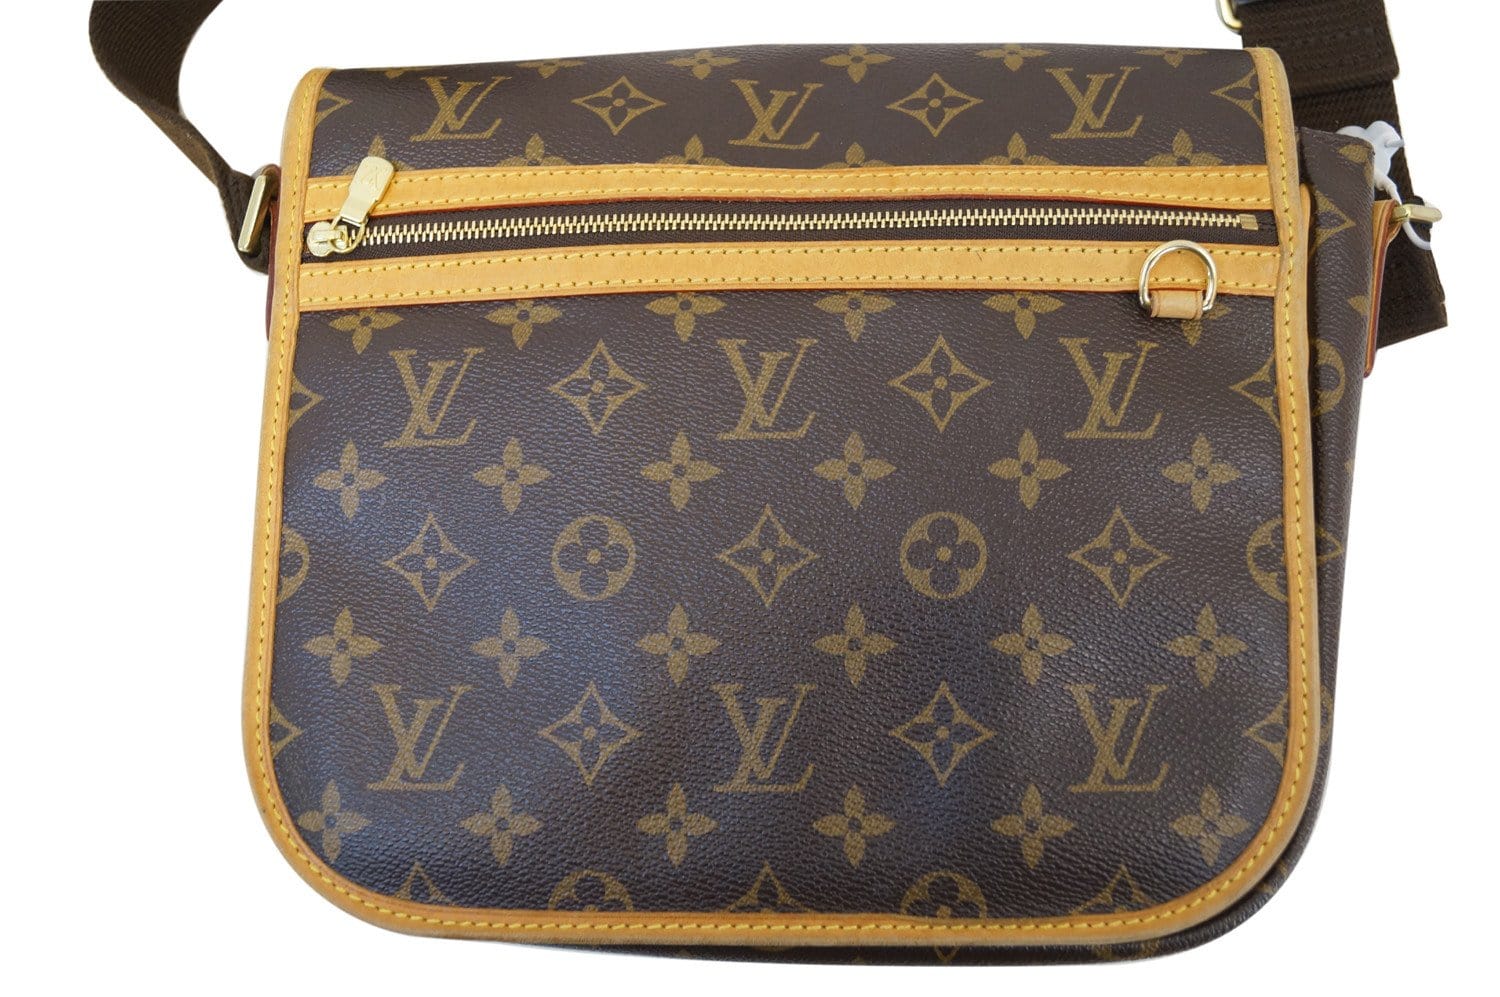 Louis Vuitton Bosphore PM Monogram Canvas Messenger Bag on SALE